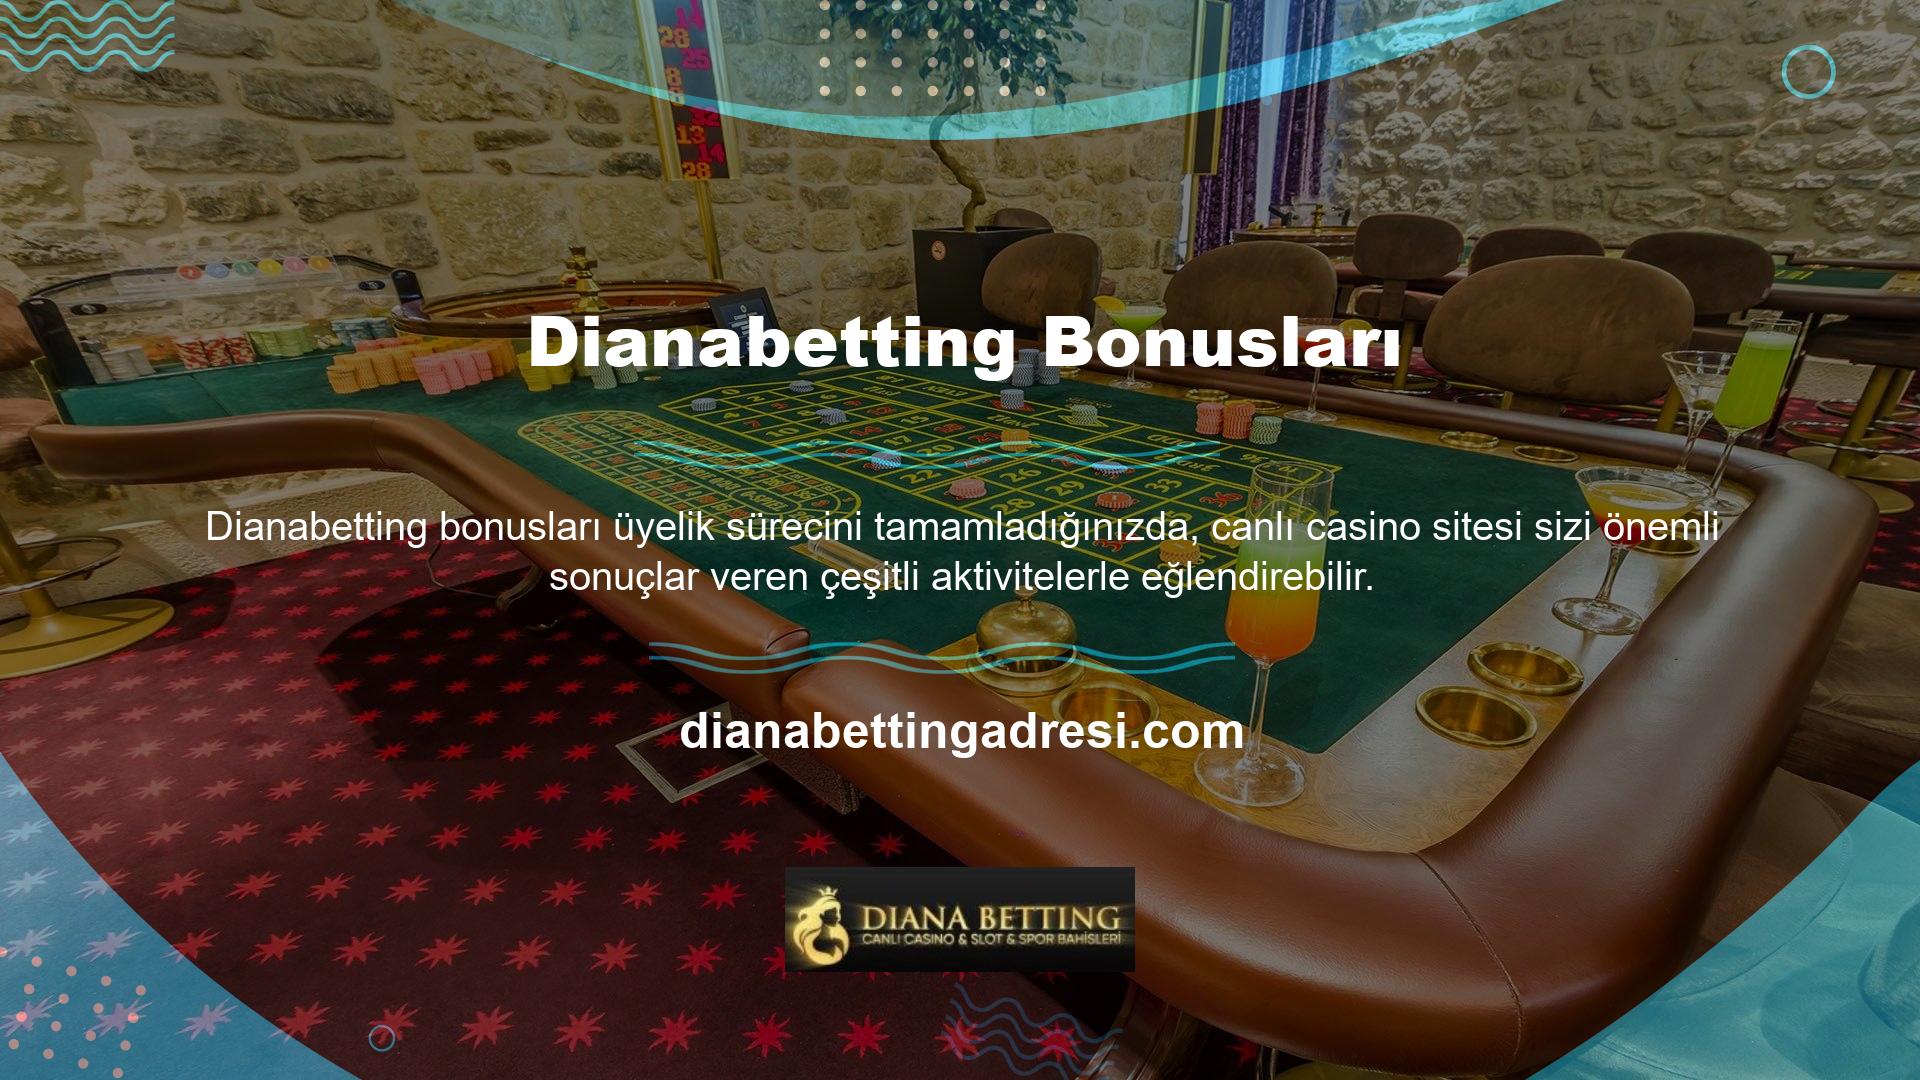 Dianabetting Bonus'ta promosyon listesinin uzun ve oldukça sınırlı olması bekleniyor ve bu tür premium site promosyonları siteye yeni üyeler davet ediyor